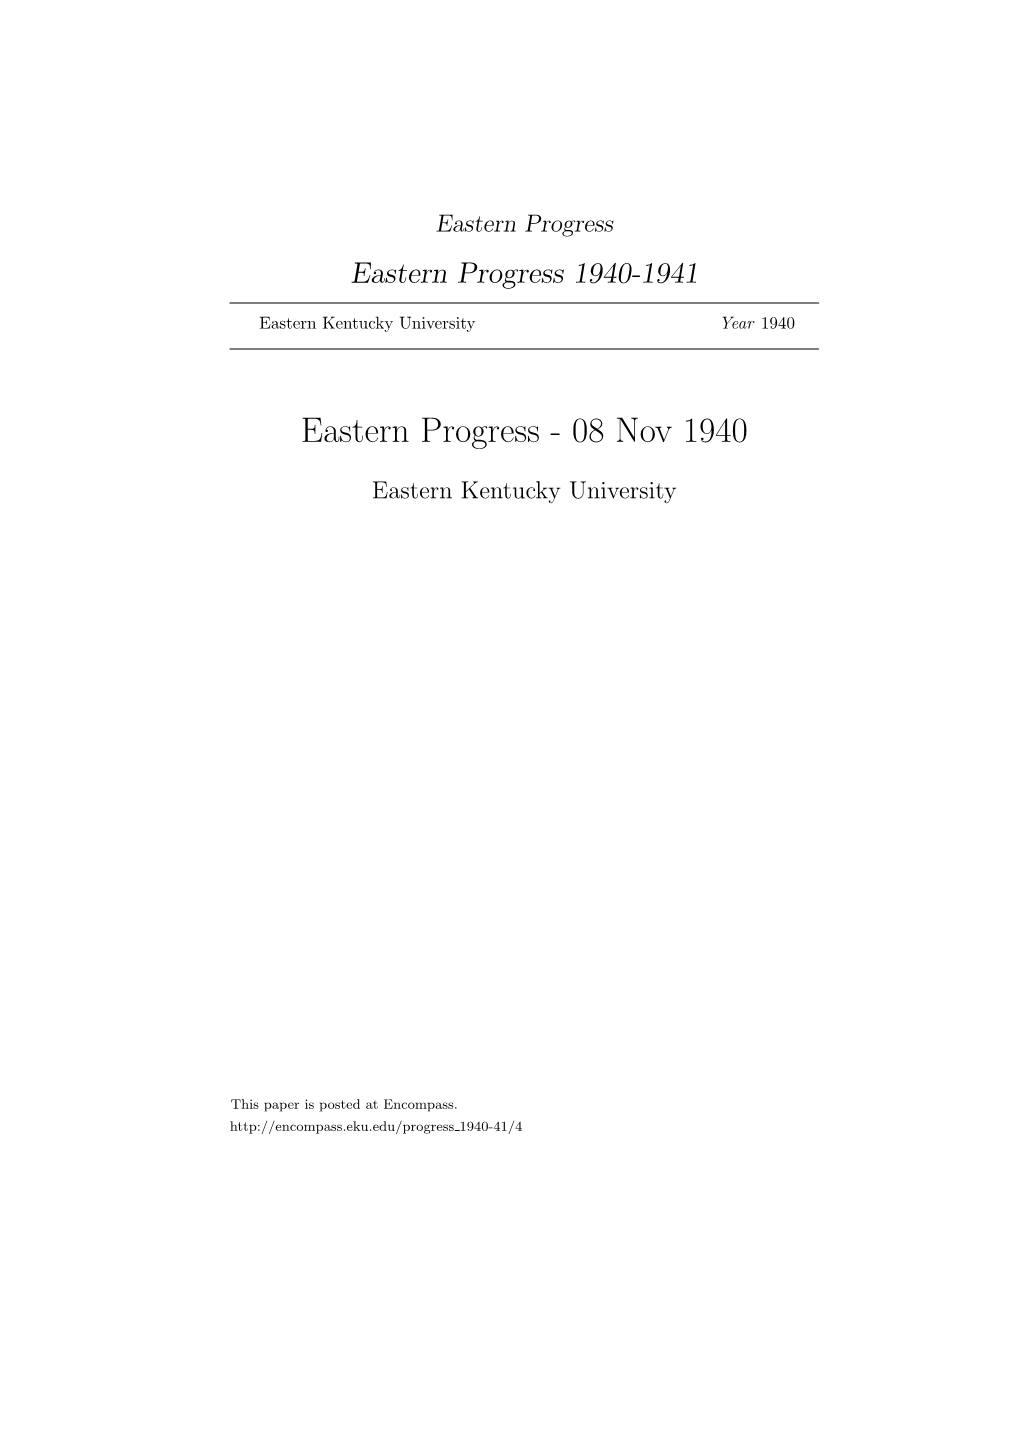 Eastern Progress Eastern Progress 1940-1941